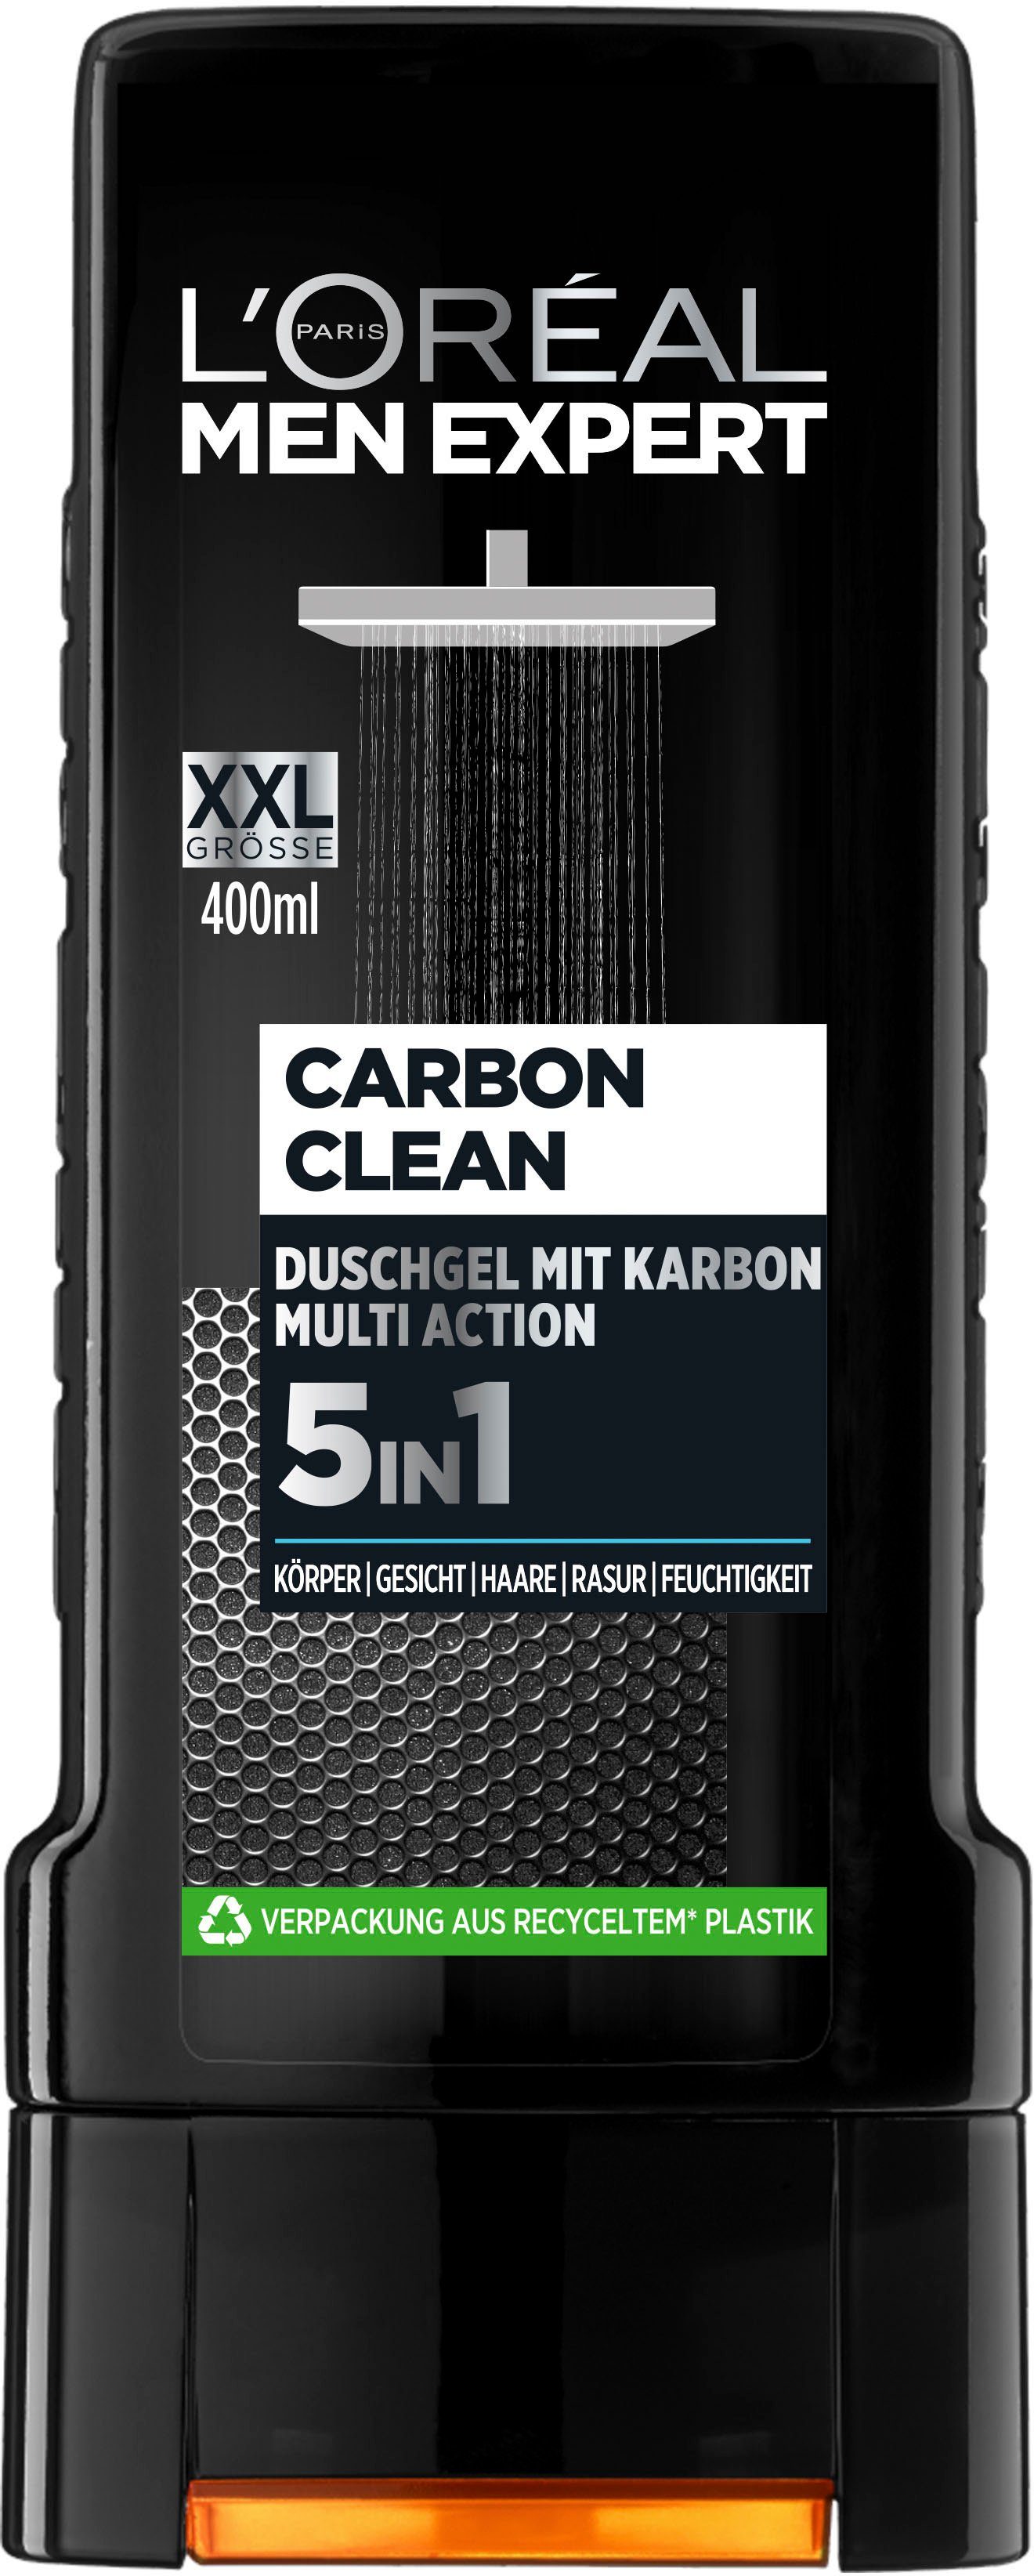 EXPERT PARIS 6-tlg. 5in1 Clean Duschgel Carbon XXL, L'ORÉAL MEN